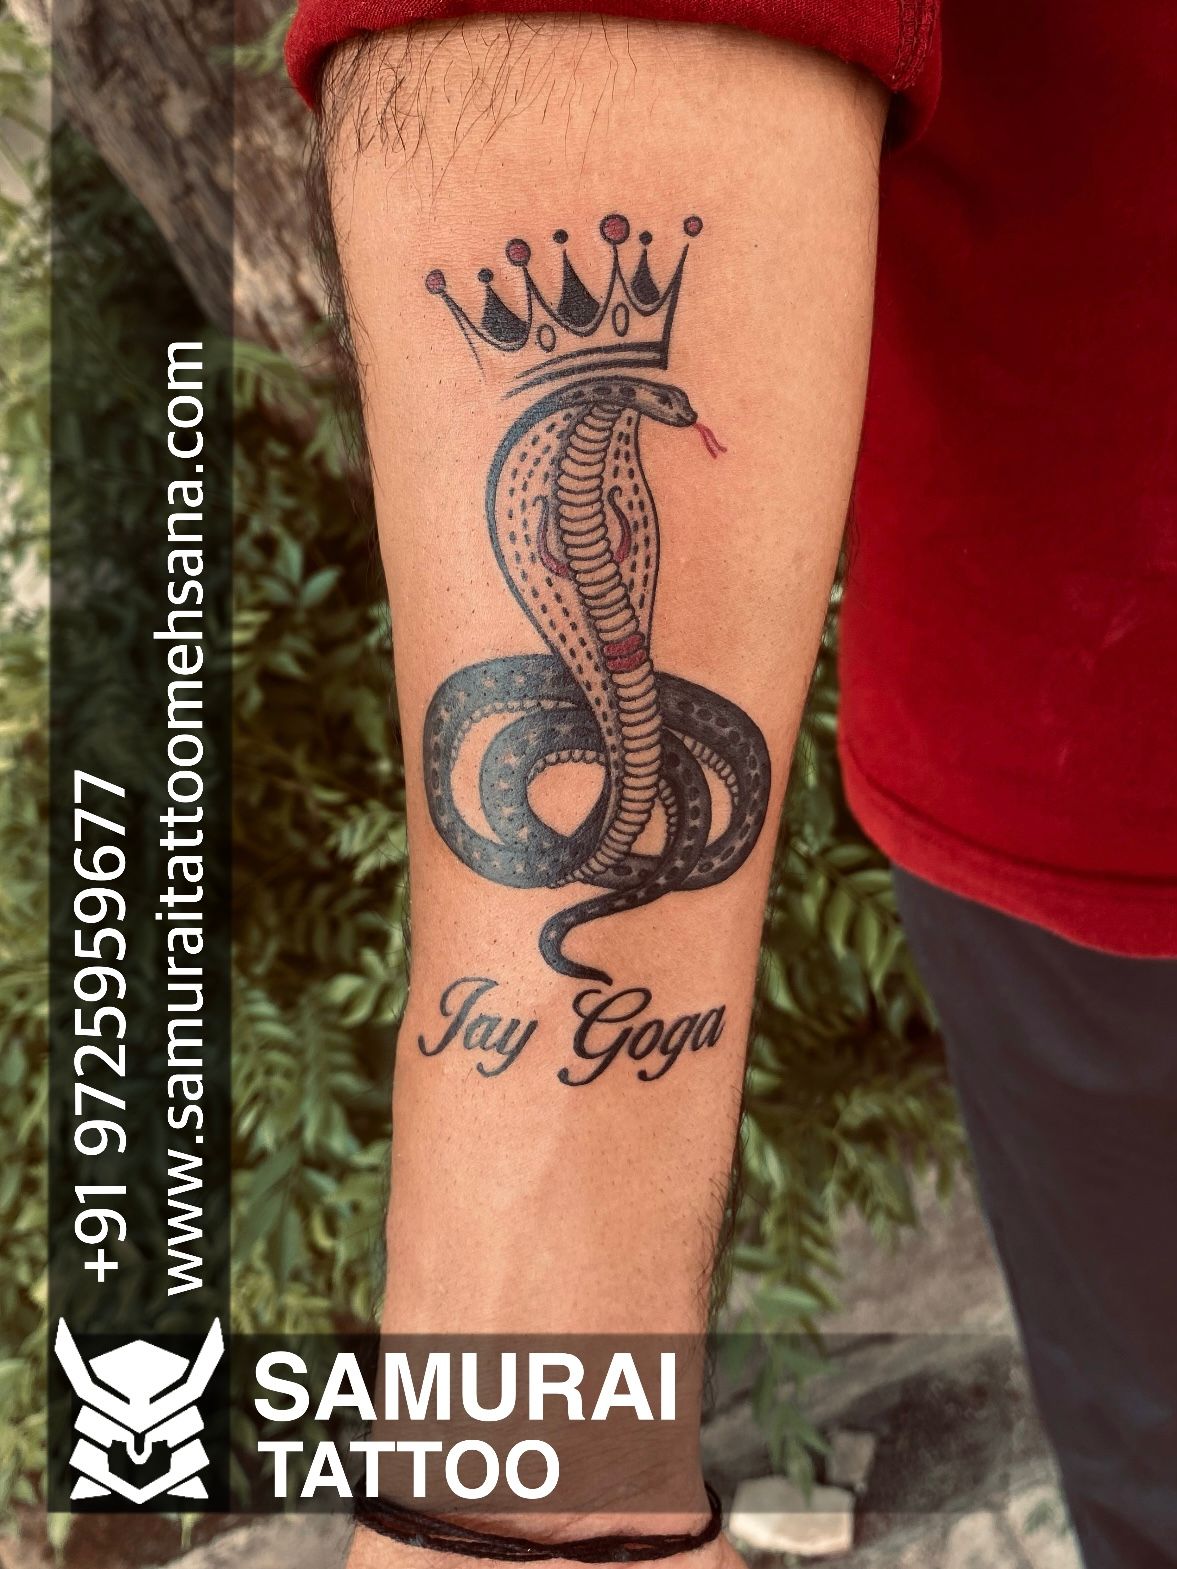 Tattoo uploaded by Samurai Tattoo mehsana  Jay goga tattoo Goga maharaj  tattoo Goga tattoo Goga maharaj nu tattoo  Tattoodo